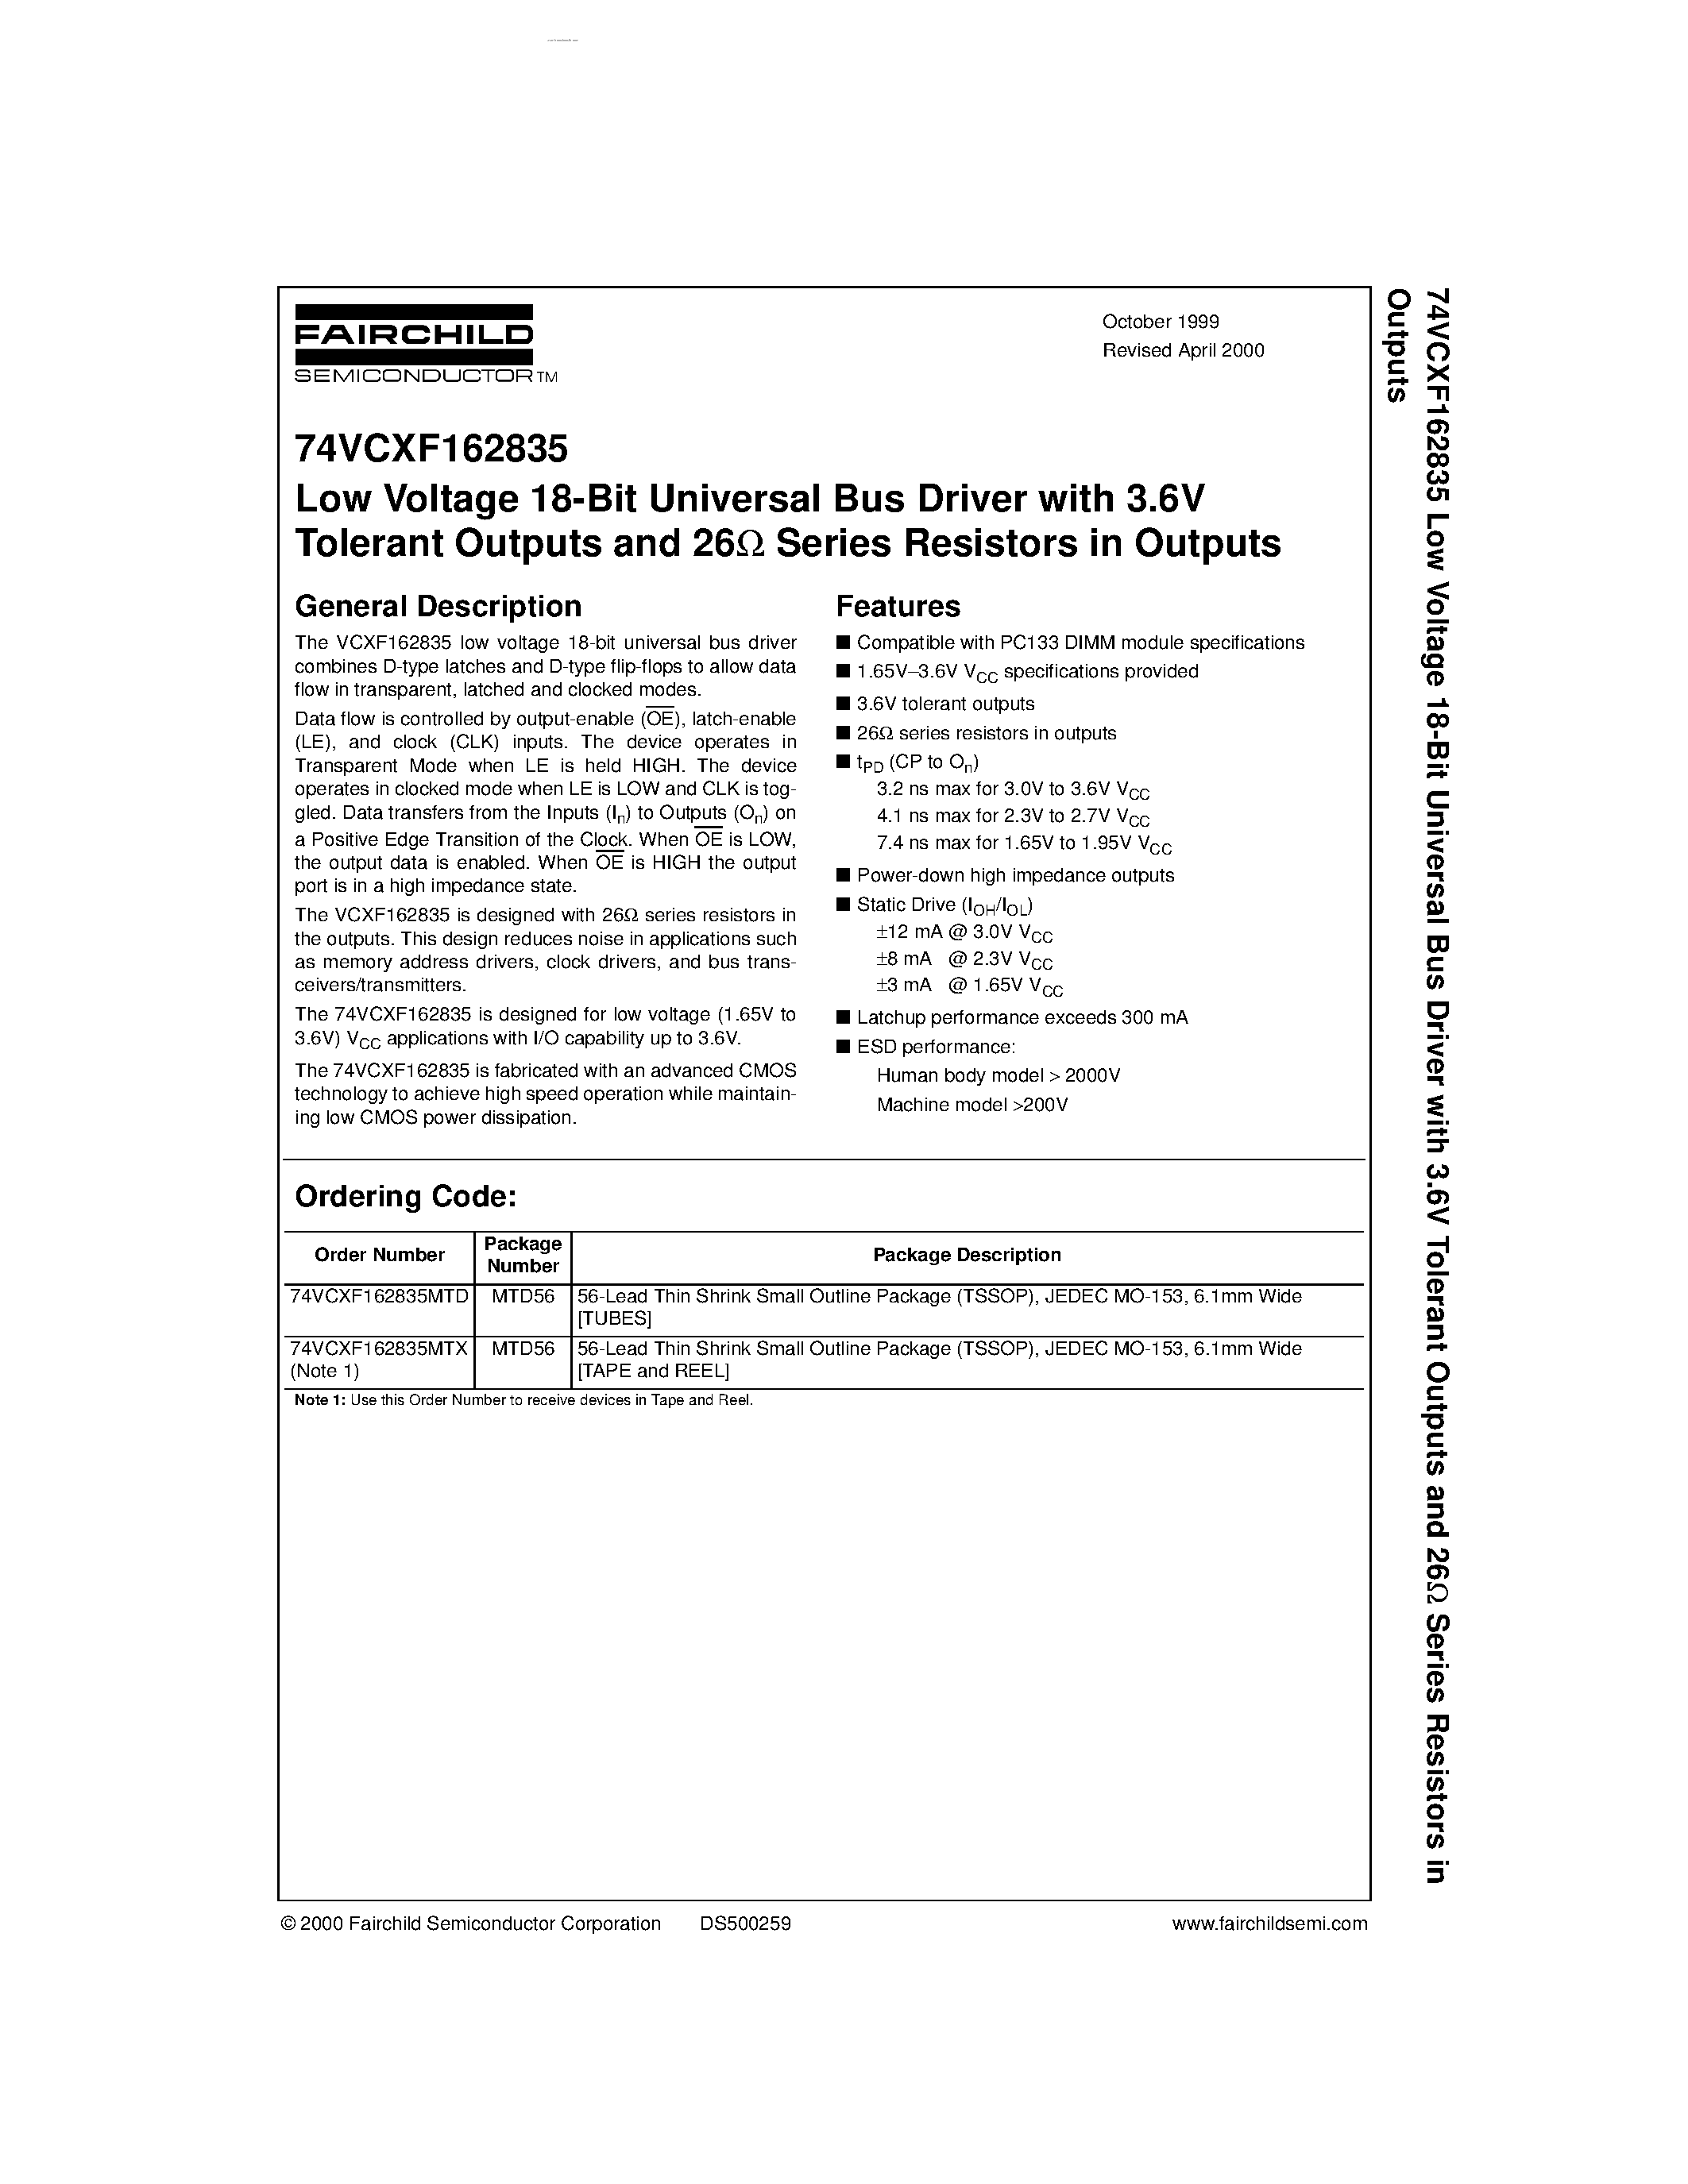 Datasheet 74VCXH162835 - Low Voltage 18-Bit Universal Bus Driver page 1